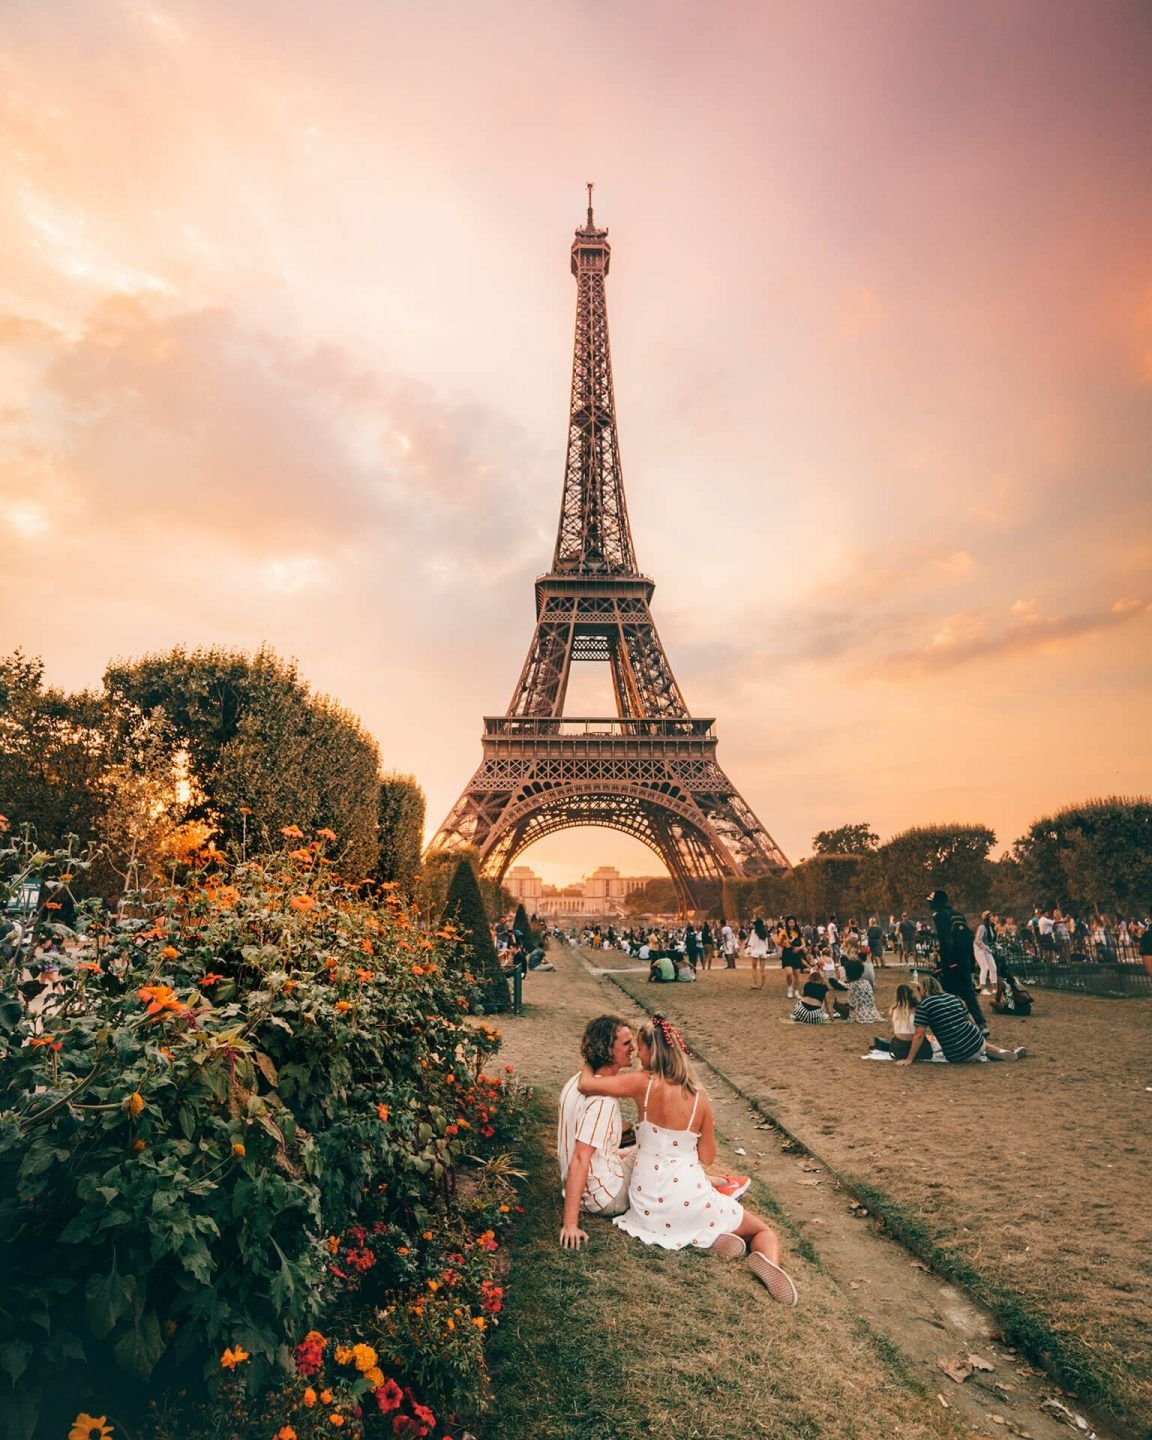 Эйфелева башня в Париже. Эйфелева башня в Париже фото. Достопримечательности Франции Эйфелева башня. Фотосессия в Париже. France travel